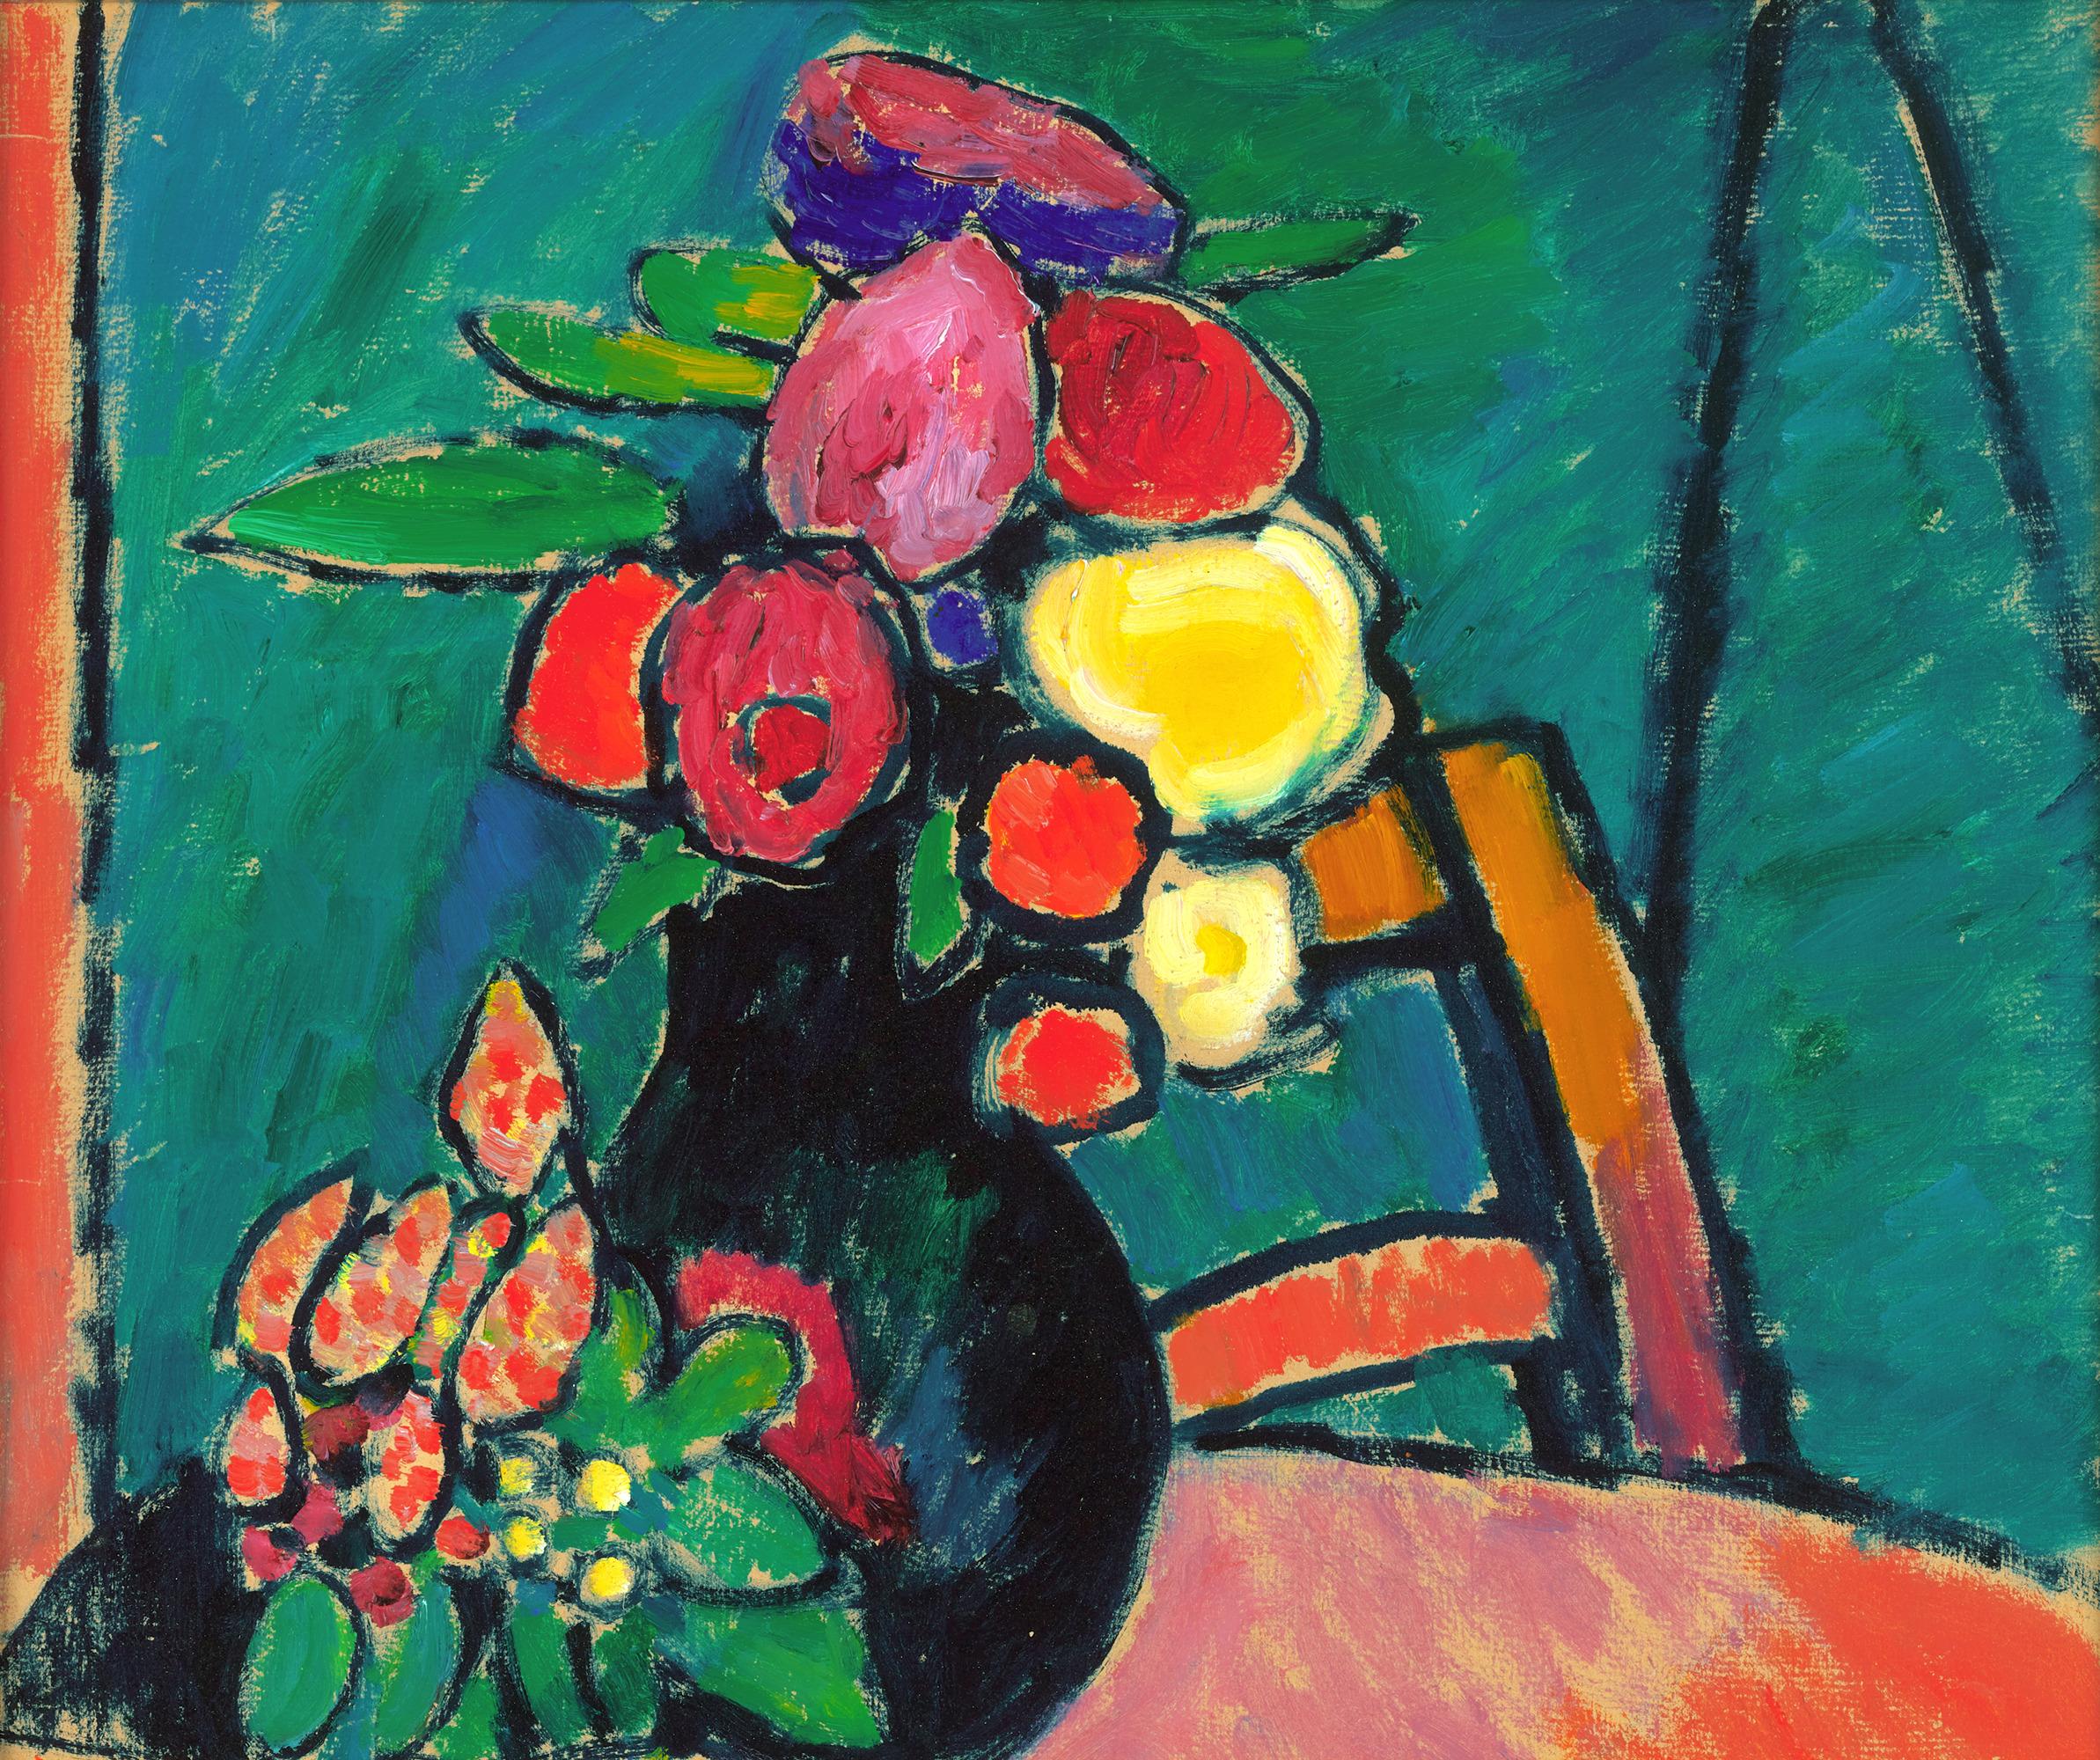 Blumenstilleben (Still Life With Flowers) By Alexej Von Jawlensky - Post-Impressionist Painting by Alexej von Jawlensky